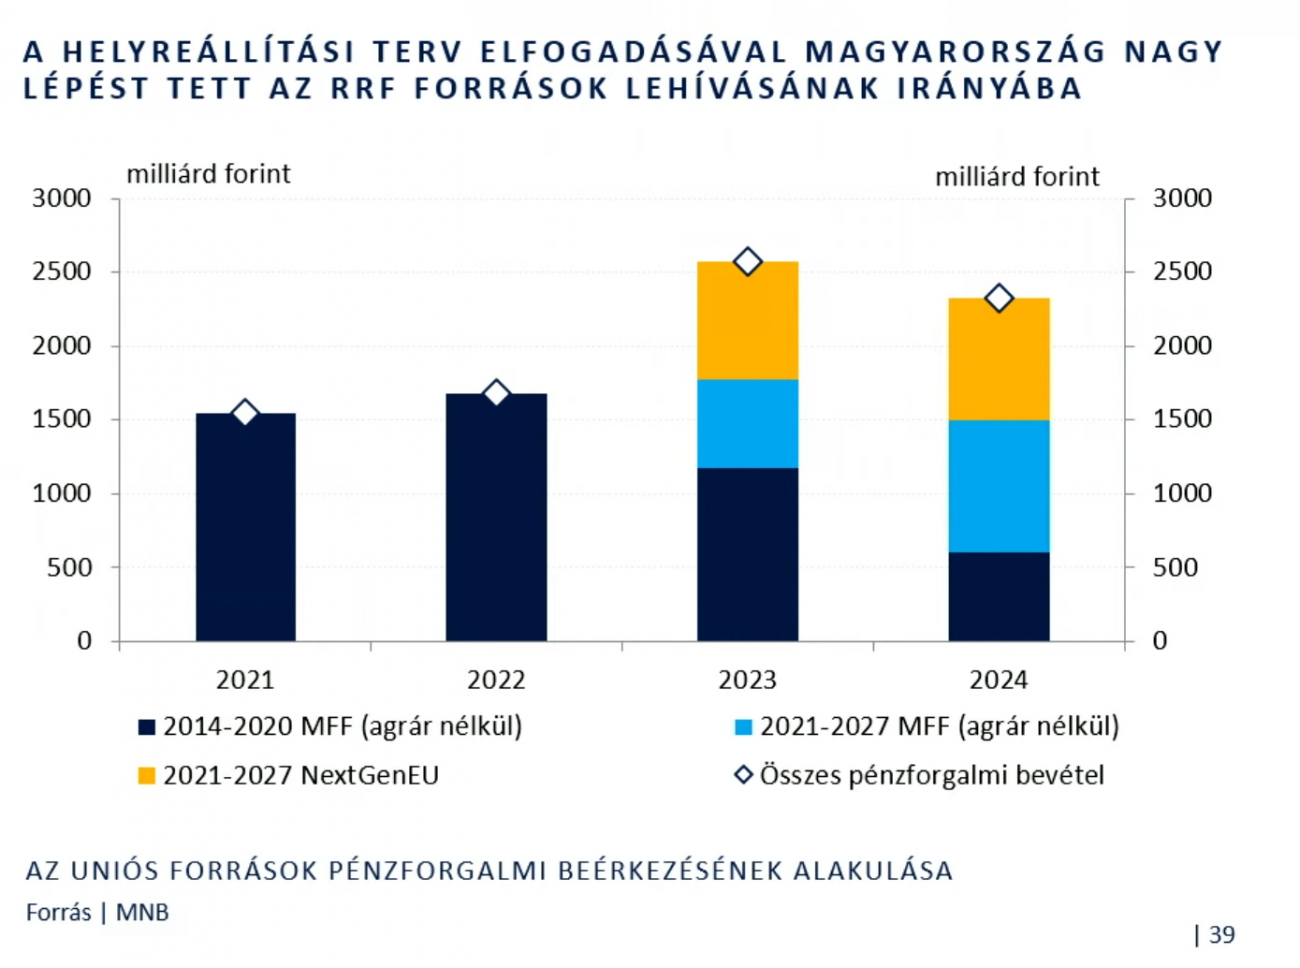 A helyreállítási terv elfogadásával Magyarország nagy lépést tett az RRF-pénzek megszerzéséért, ez jelentős bevétel lesz a költségvetésnek. (MNB)